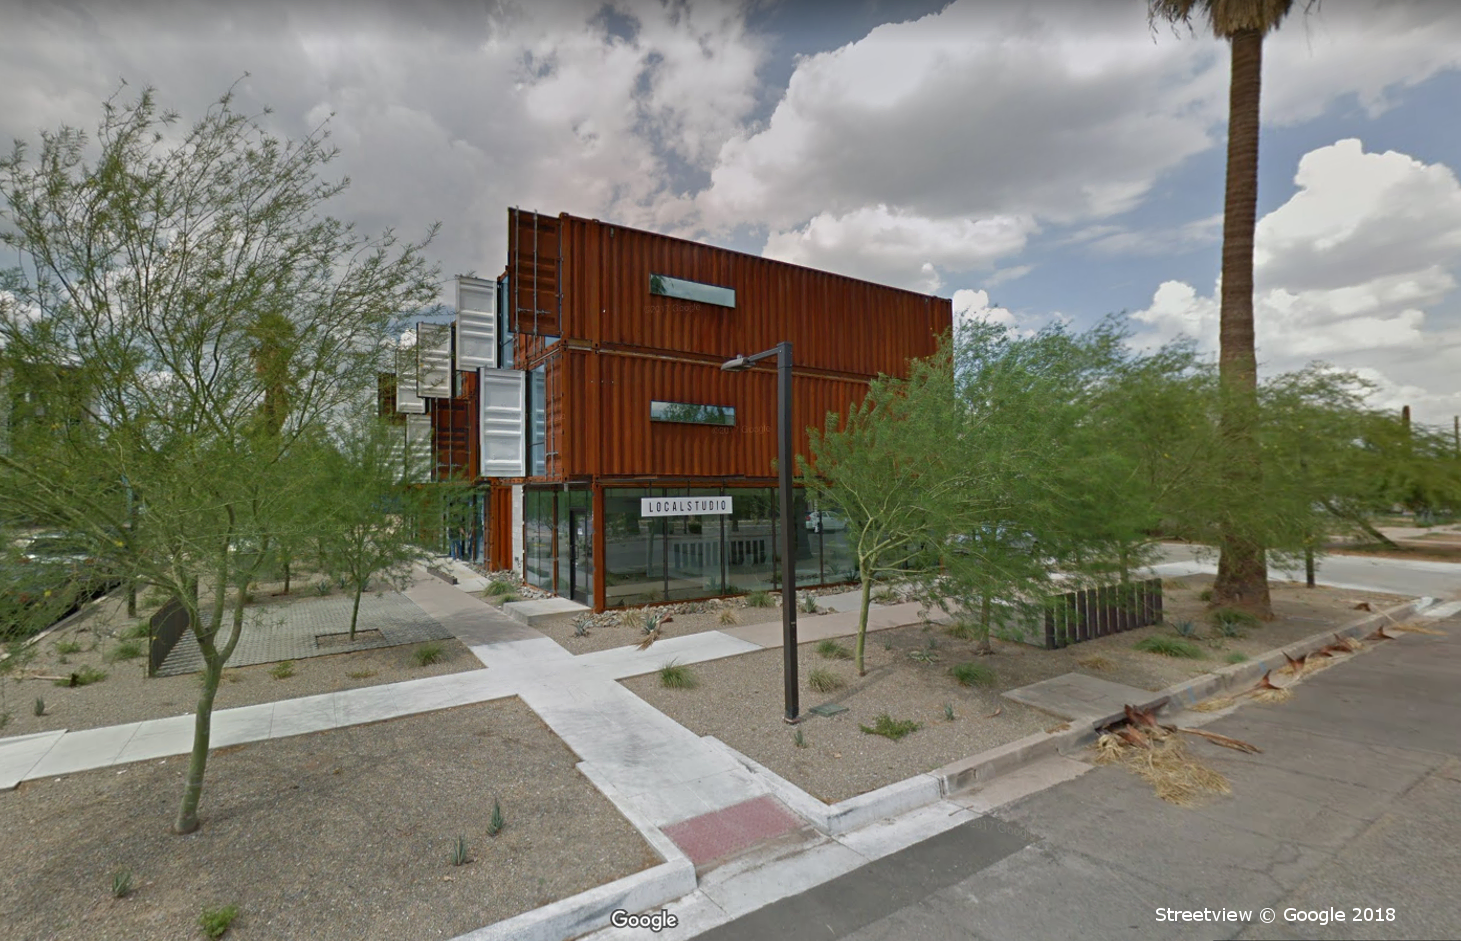 The Oscar Apartment Complex, Phoenix AZ, Google Streetview